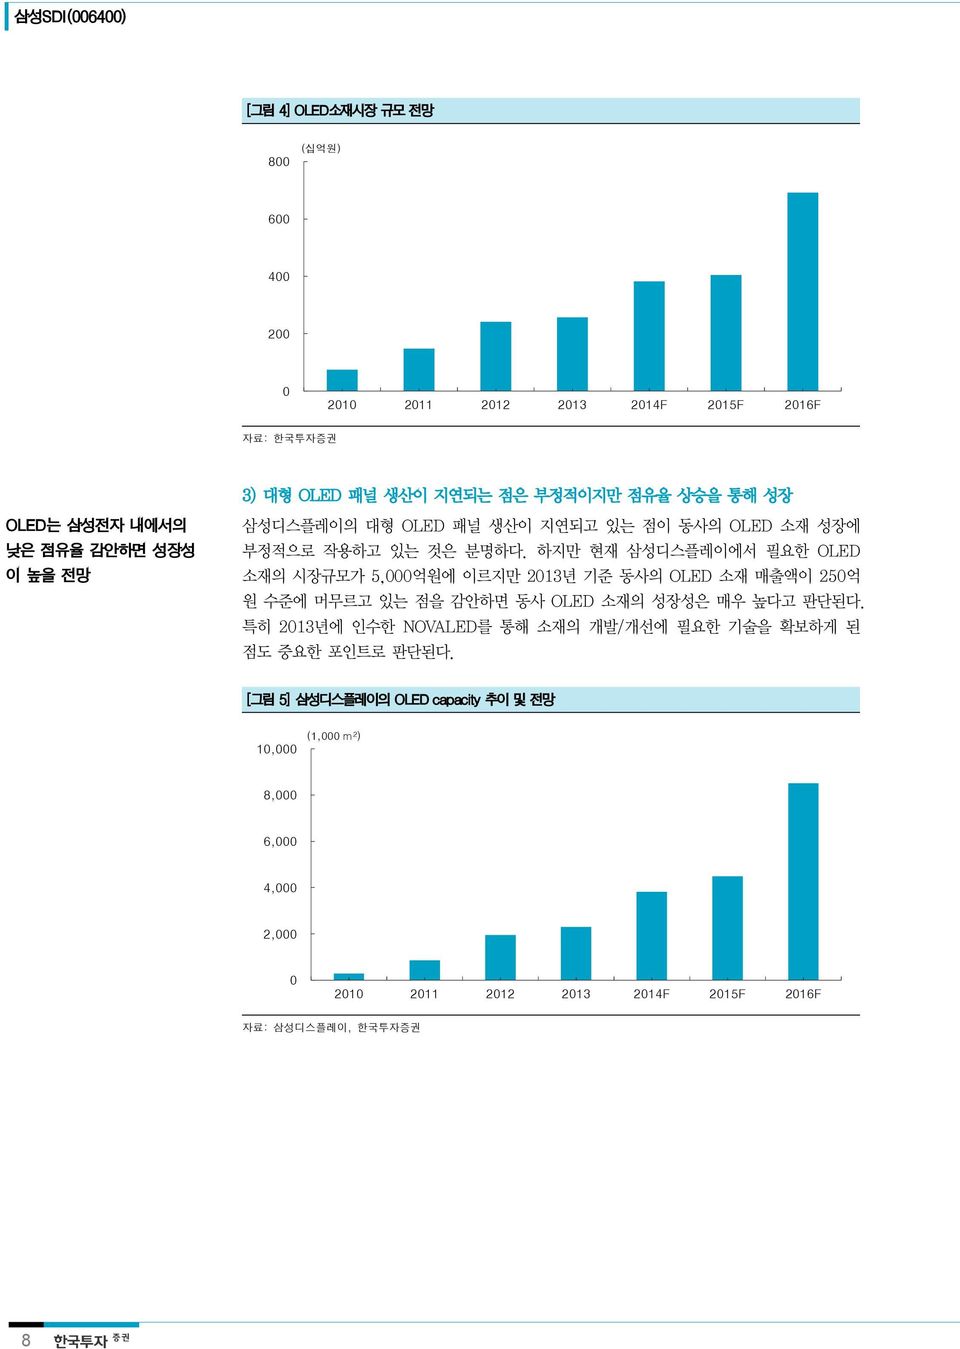 하지만 현재 삼성디스플레이에서 필요한 OLED 소재의 시장규모가 5,000억원에 이르지만 2013년 기준 동사의 OLED 소재 매출액이 250억 원 수준에 머무르고 있는 점을 감안하면 동사 OLED 소재의 성장성은 매우 높다고 판단된다.